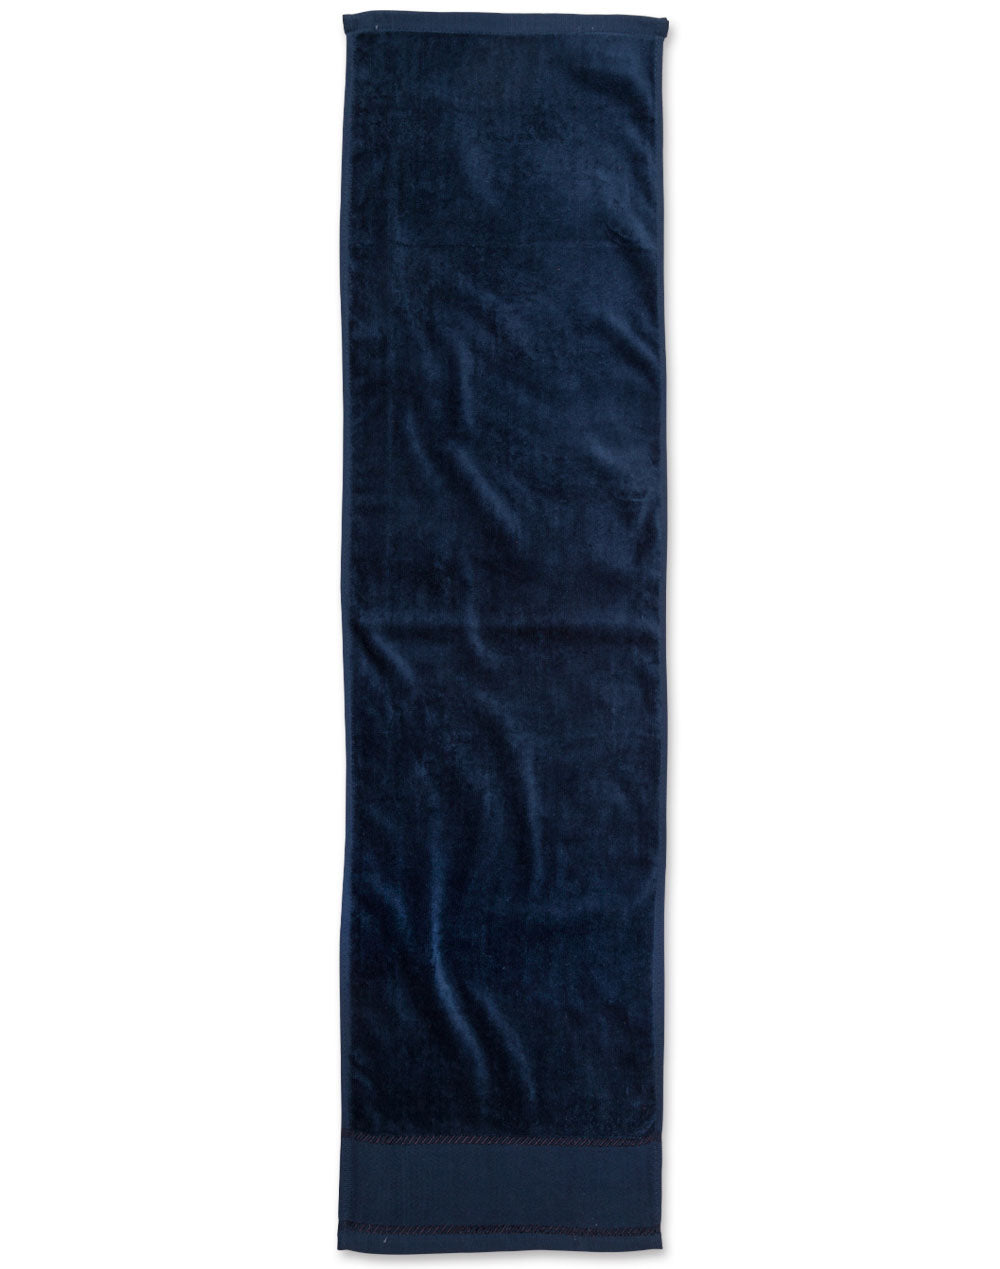 [TW05] terry velour fitness towel 110x30 cm